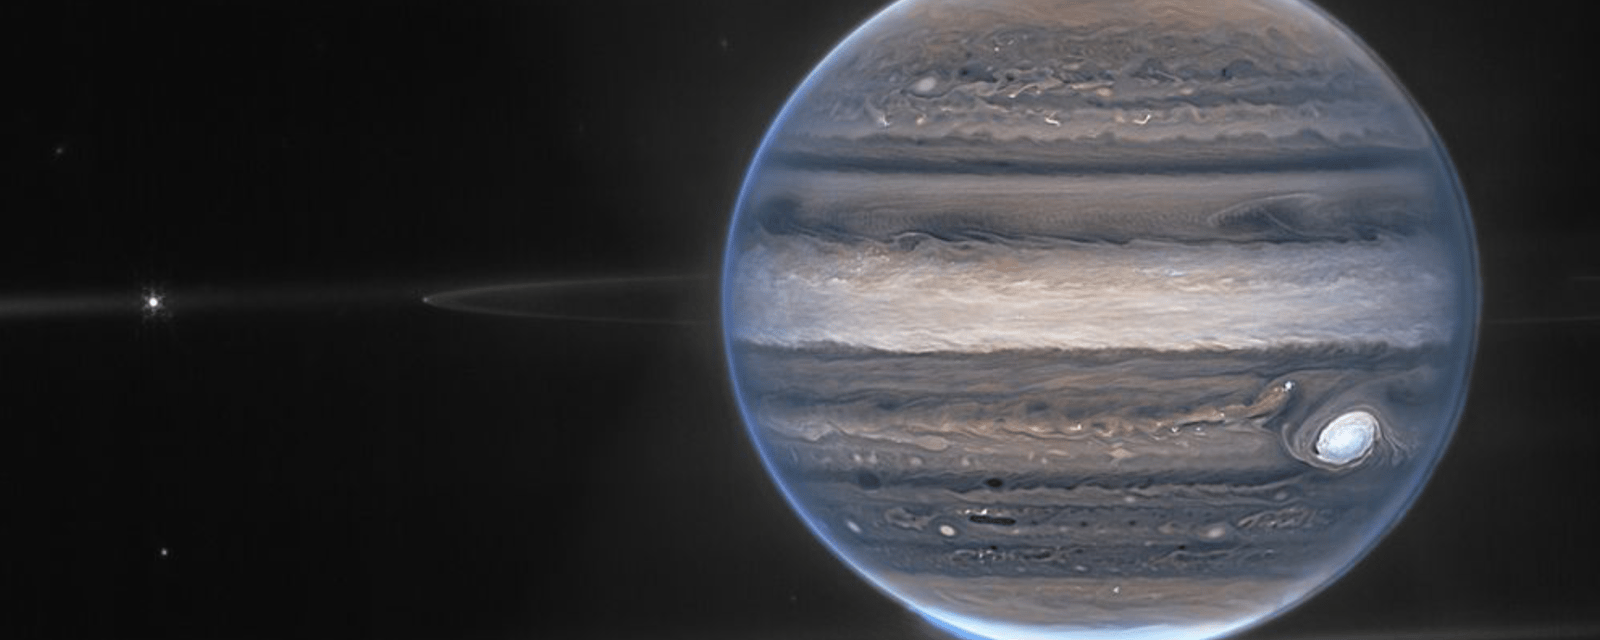 La NASA dévoile des images inédites de Jupiter grâce au télescope James Webb